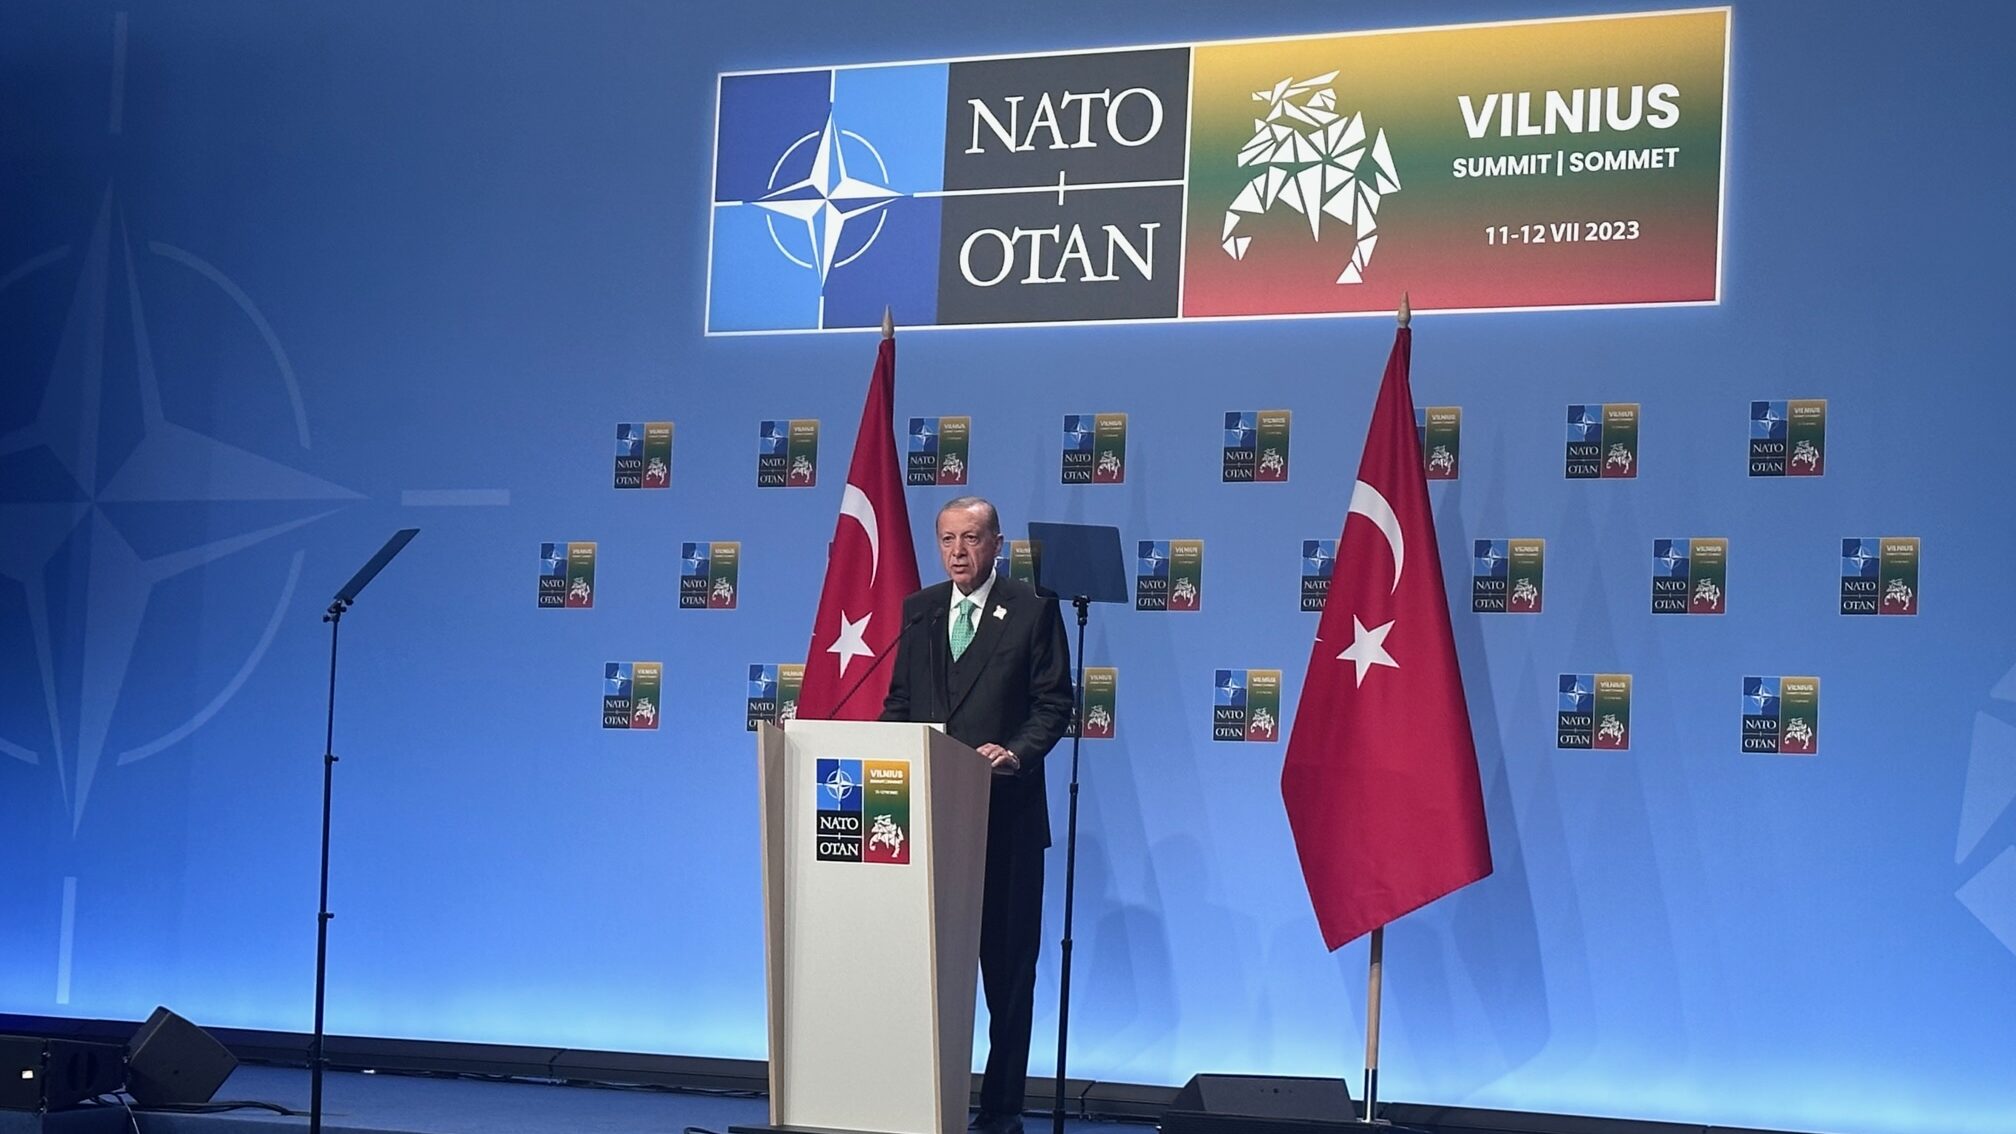 Turkey won’t clear Sweden’s way into NATO for 3 months, Erdogan says